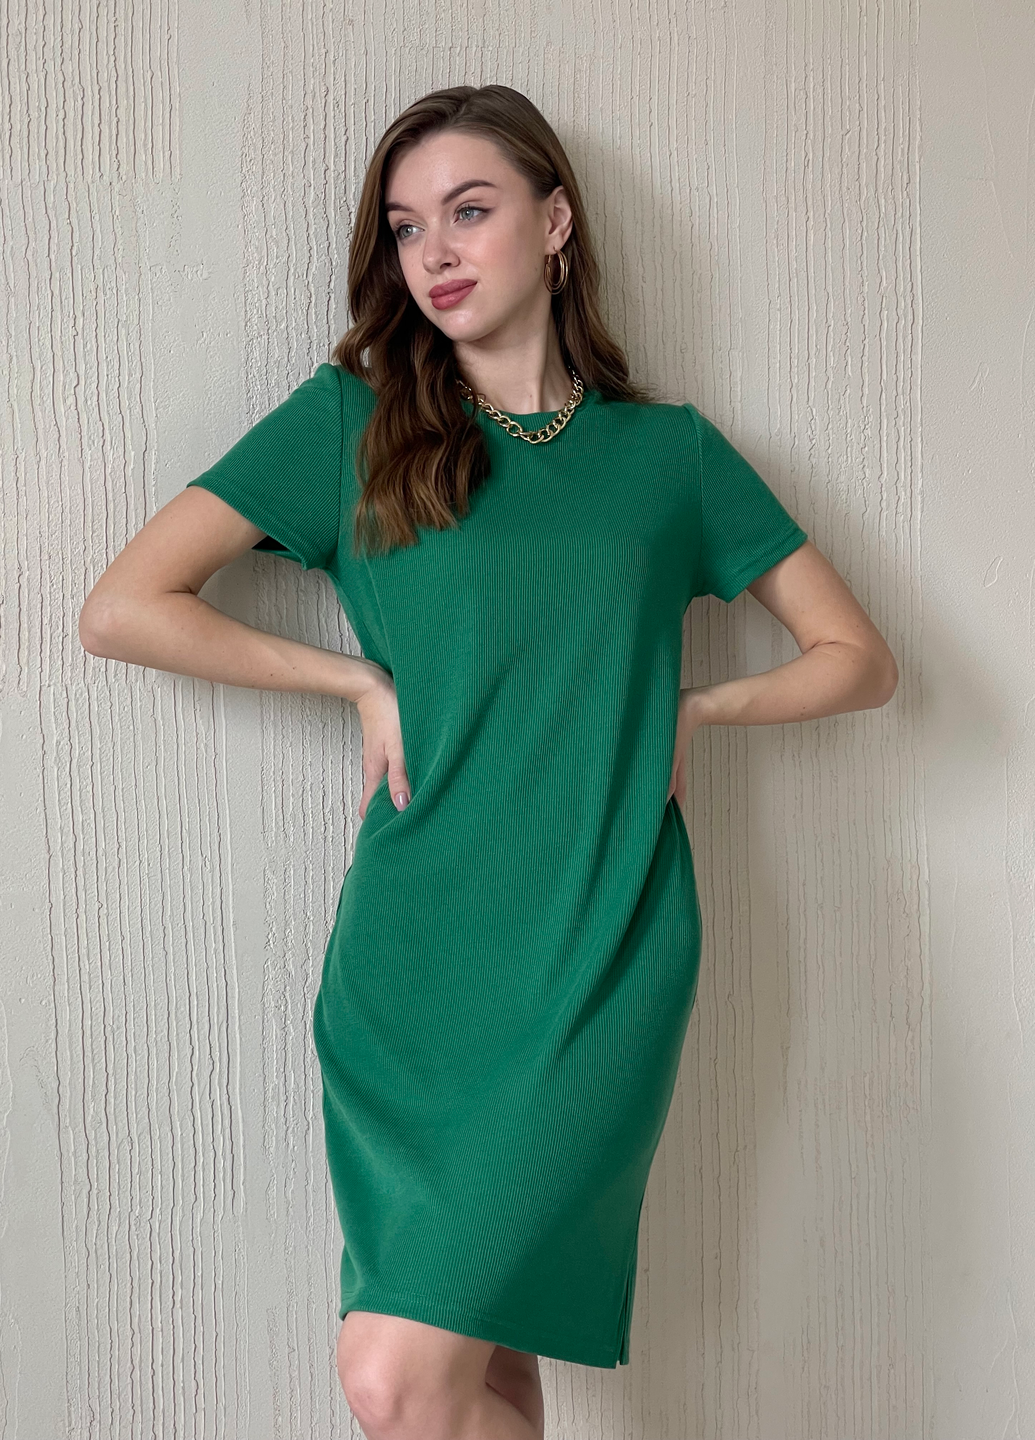 Купить Платье-футболка до колена в рубчик зеленое Merlini Милан 700000149 размер 42-44 (S-M) в интернет-магазине